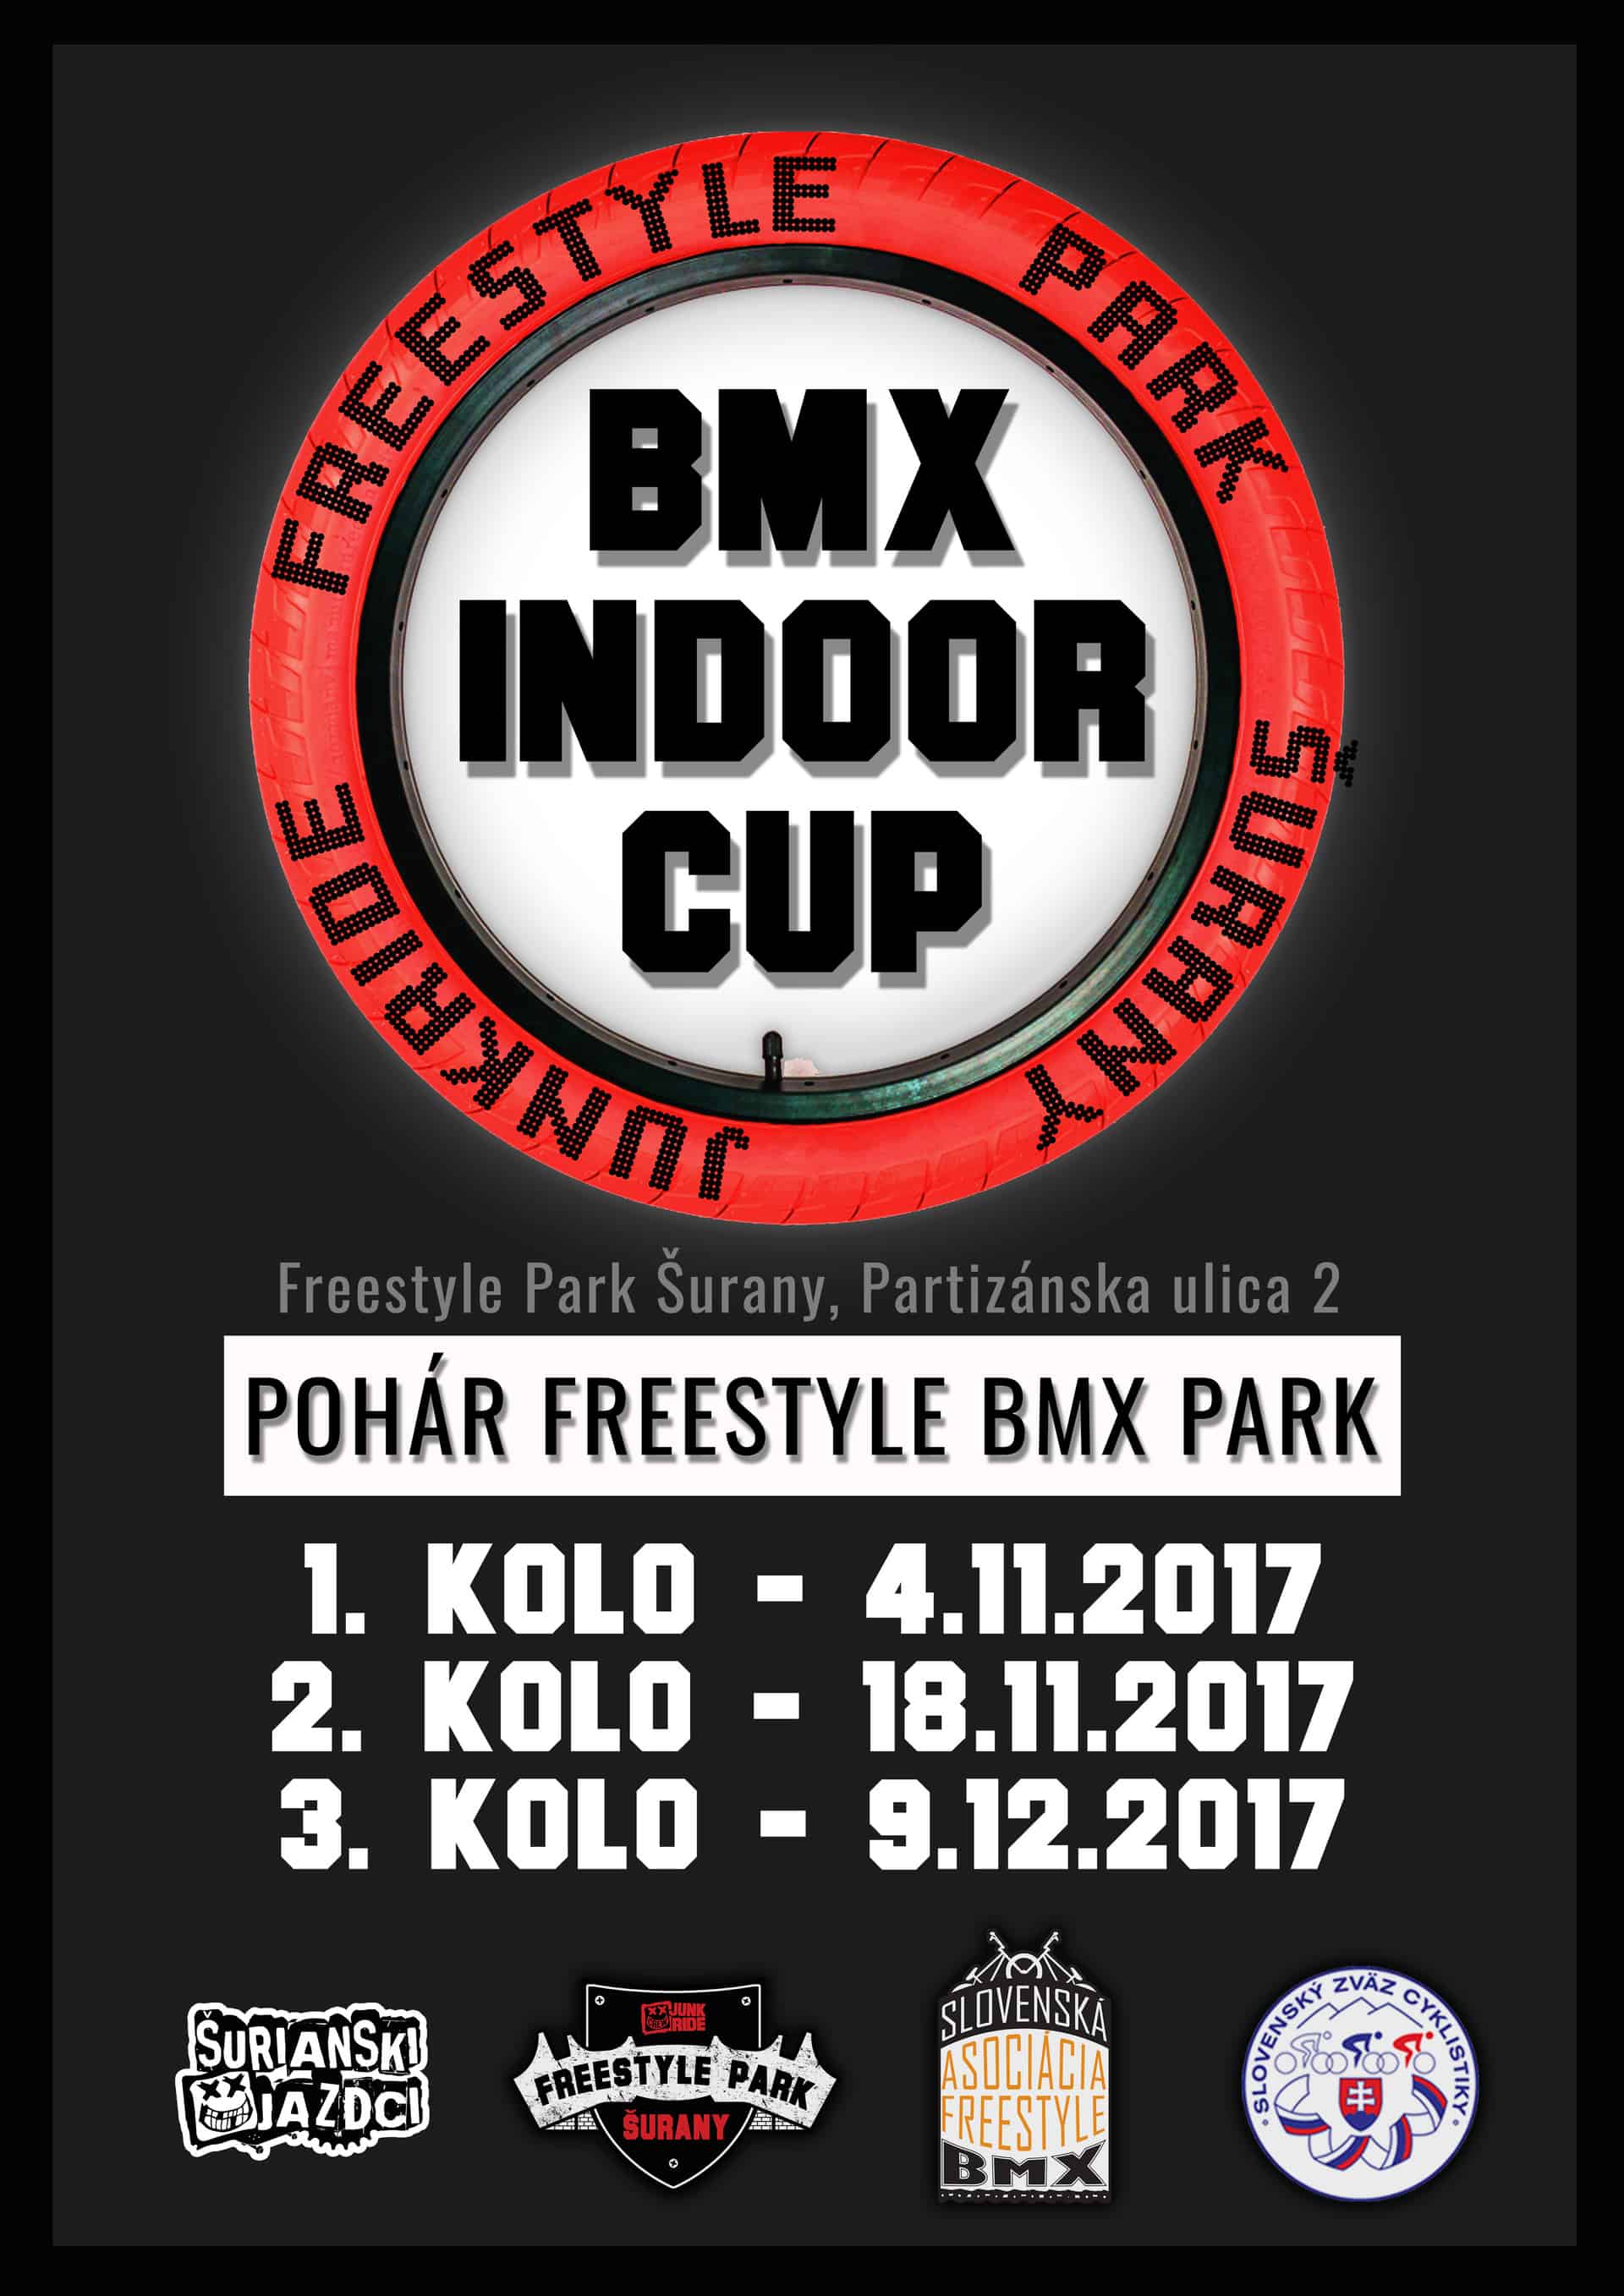 BMX POHÁR - INDOOR CUP